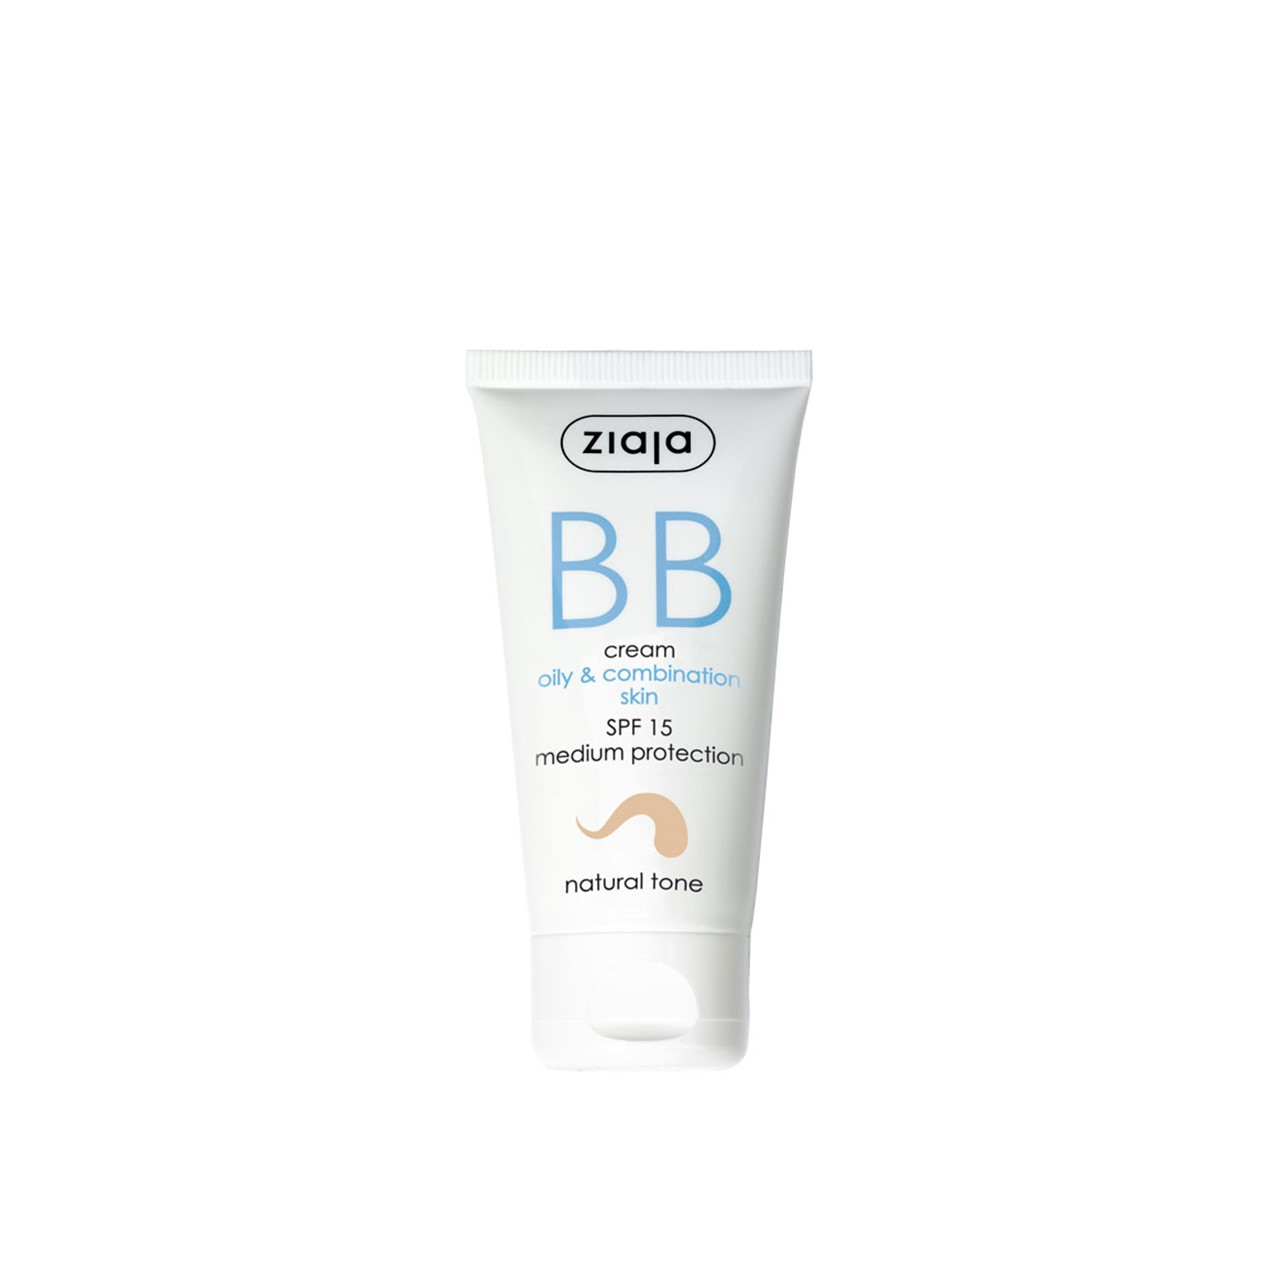 Ziaja BB Cream For Oily & Combination Skin SPF15 Natural Tone 50ml (1.7 fl oz)